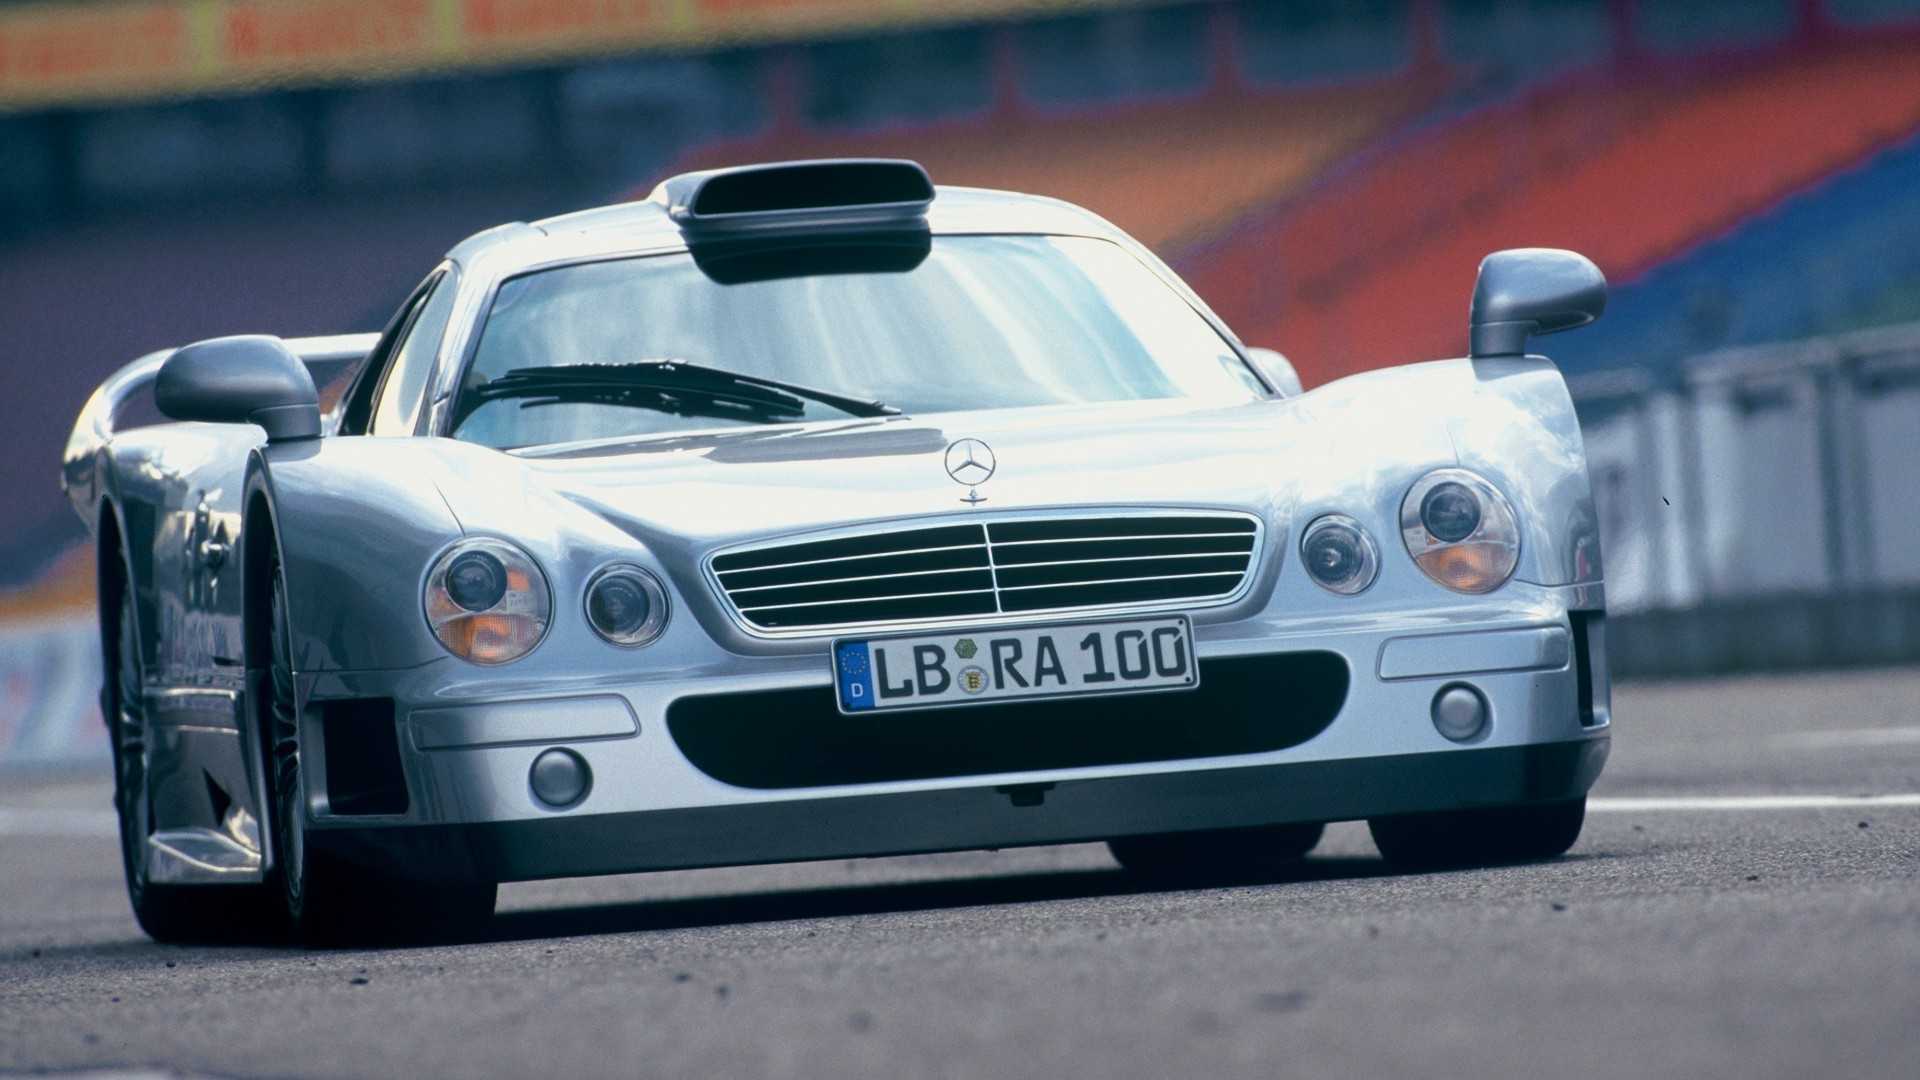 Mercedes-Benz Clk Gtr Wallpapers